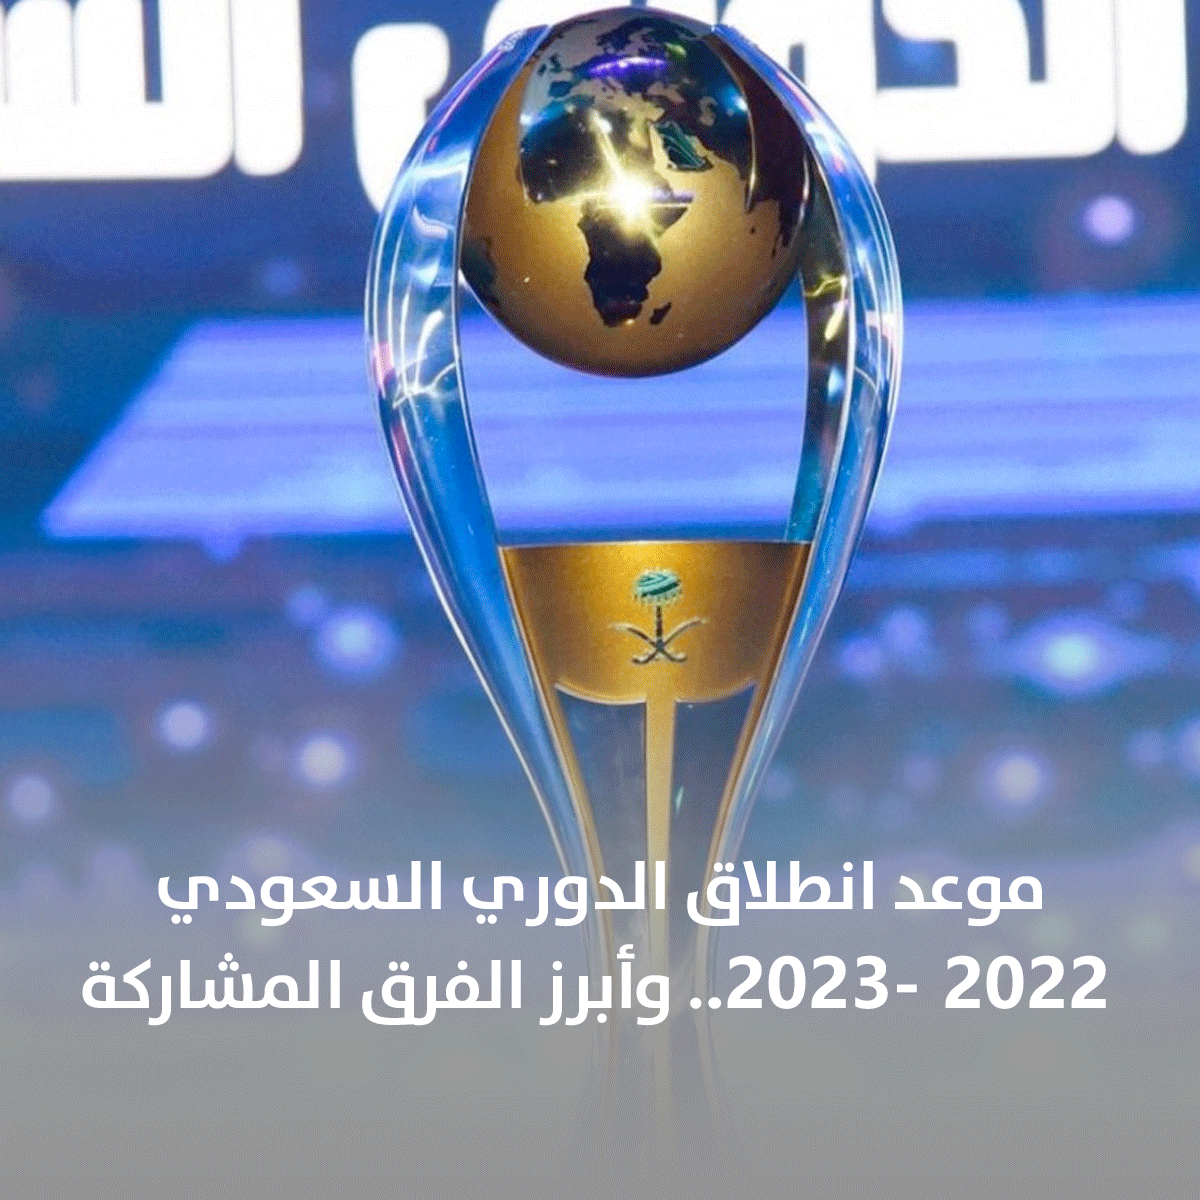 موعد بداية الدوري السعودي والفرق المتأهلة لدوري أبطال آسيا 2023